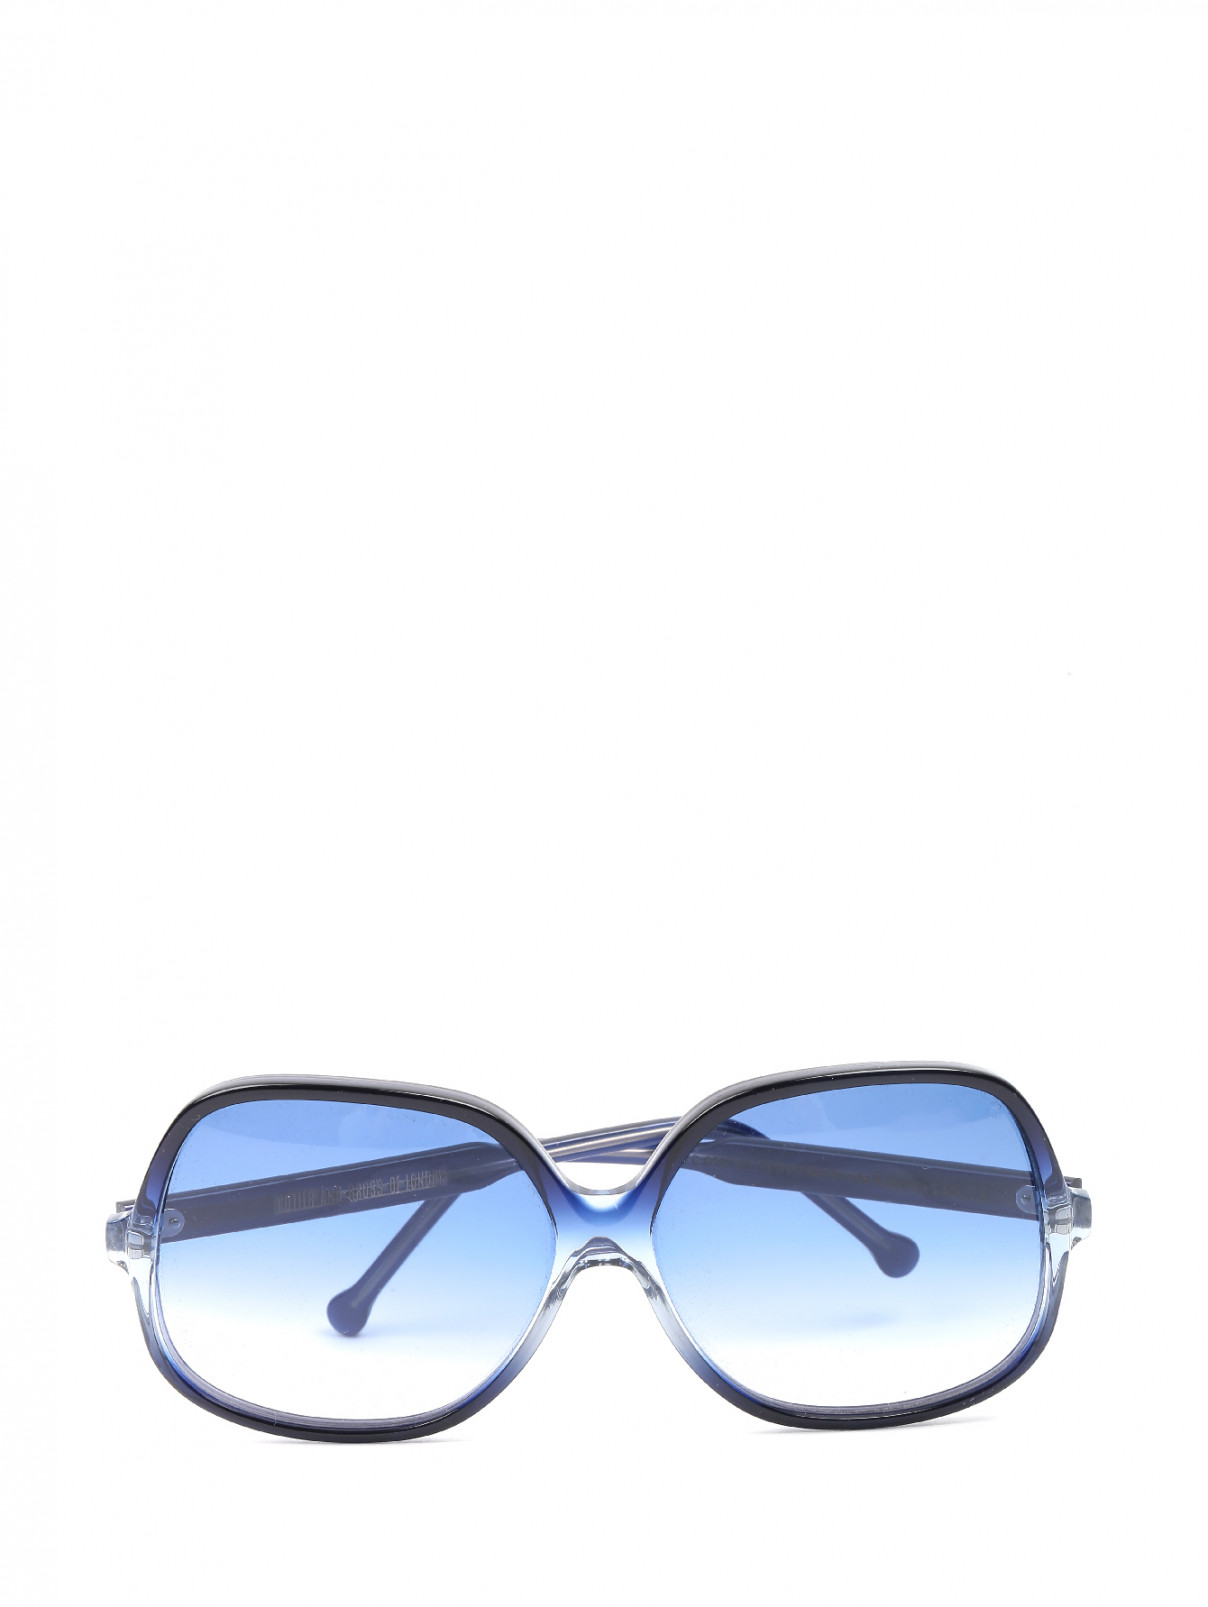 Солнцезащитные очки в пластиковой оправе Cutler and Gross  –  Общий вид  – Цвет:  Синий